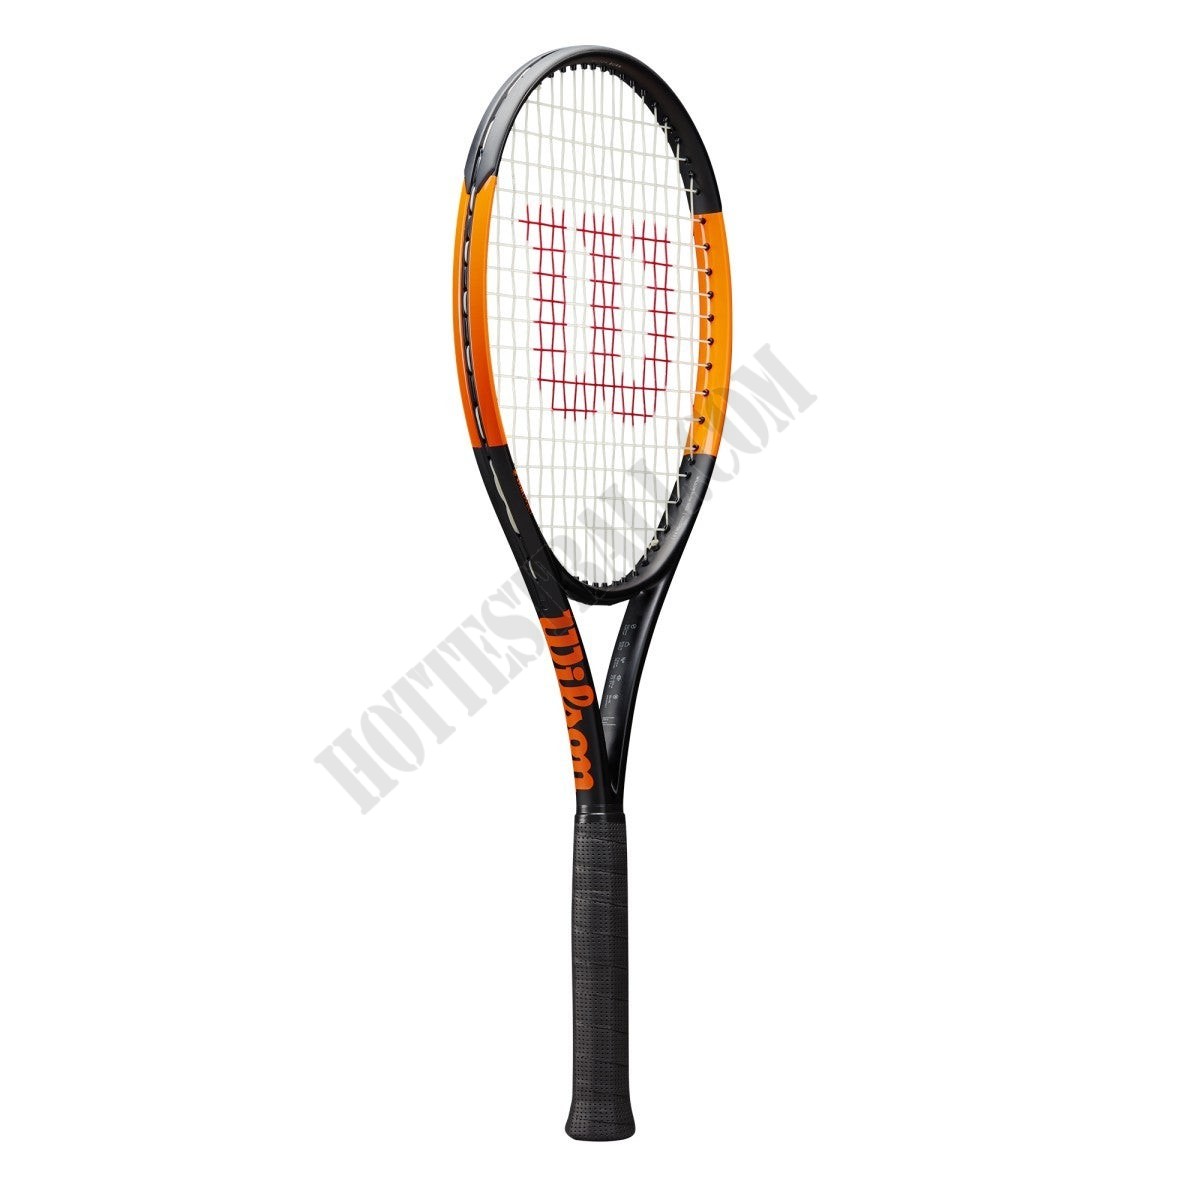 Burn 100LS Tennis Racket - Wilson Discount Store - -0